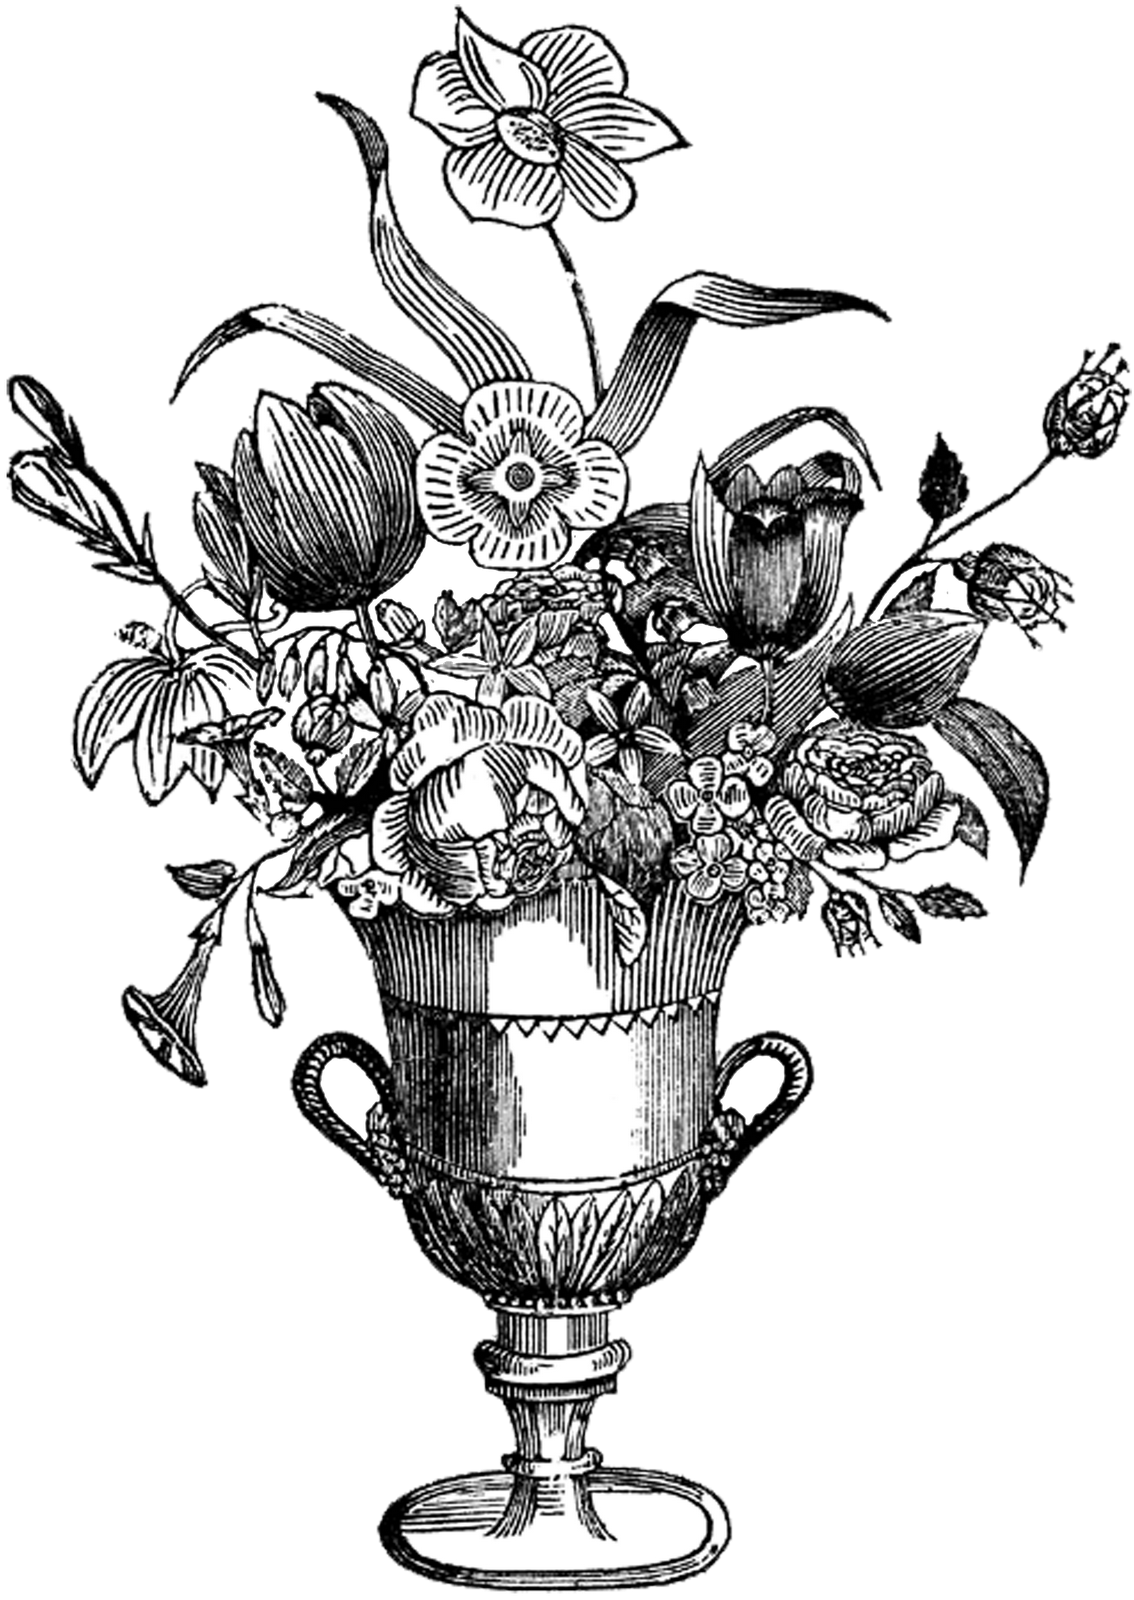 Free Digital Stamp - Ornate Flower Vase | Digital stamps ... - Vintage Black and White Roses